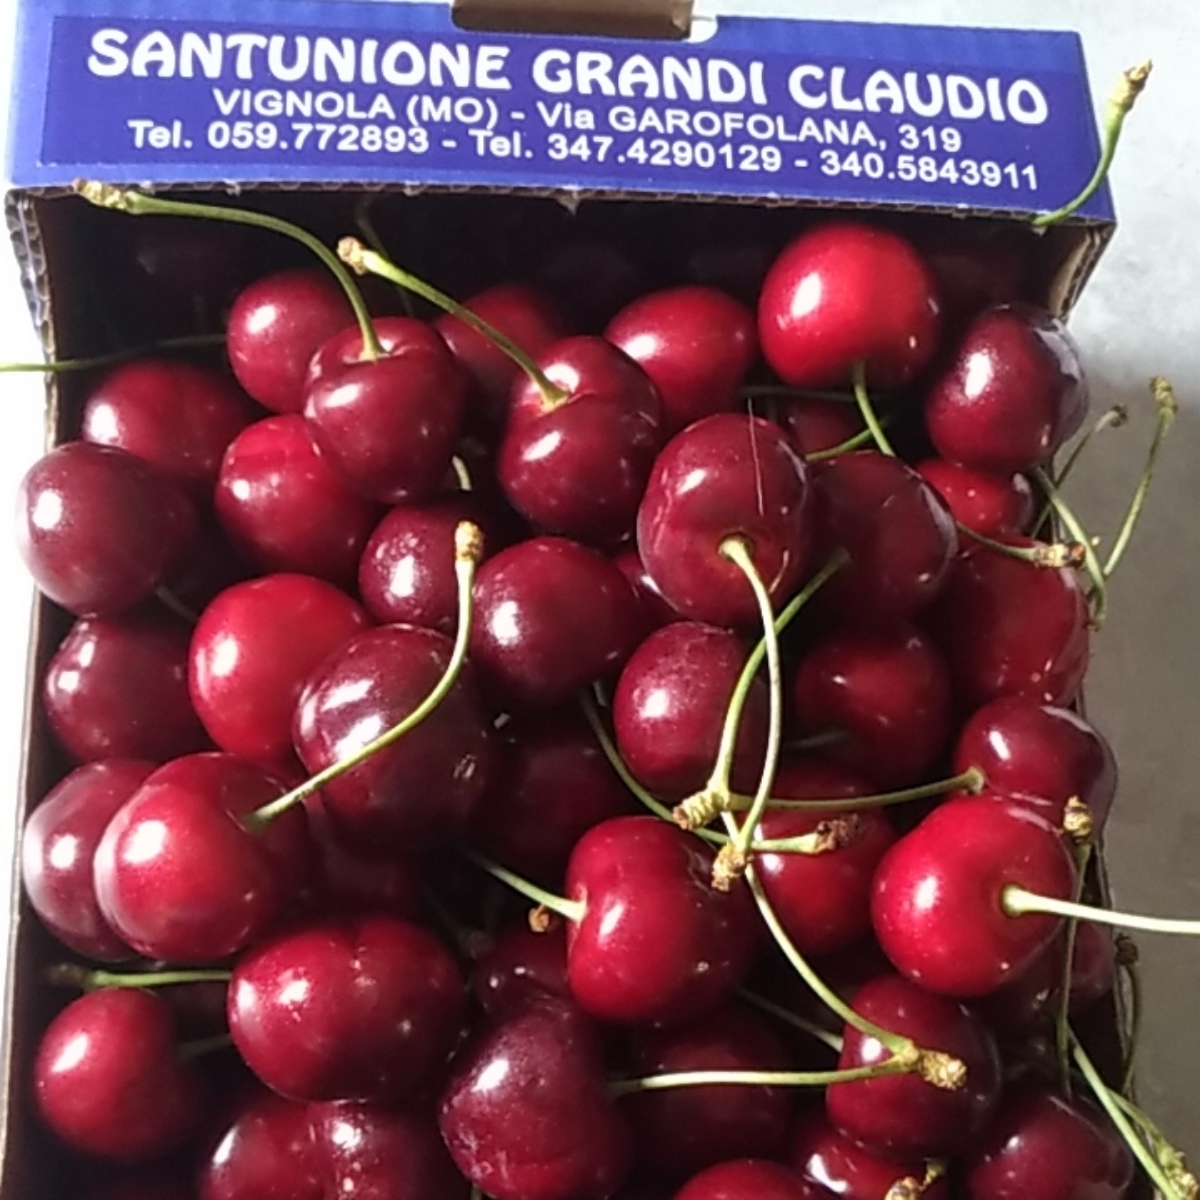 Santunione Grandi Claudio Ciliegie Review | abillion